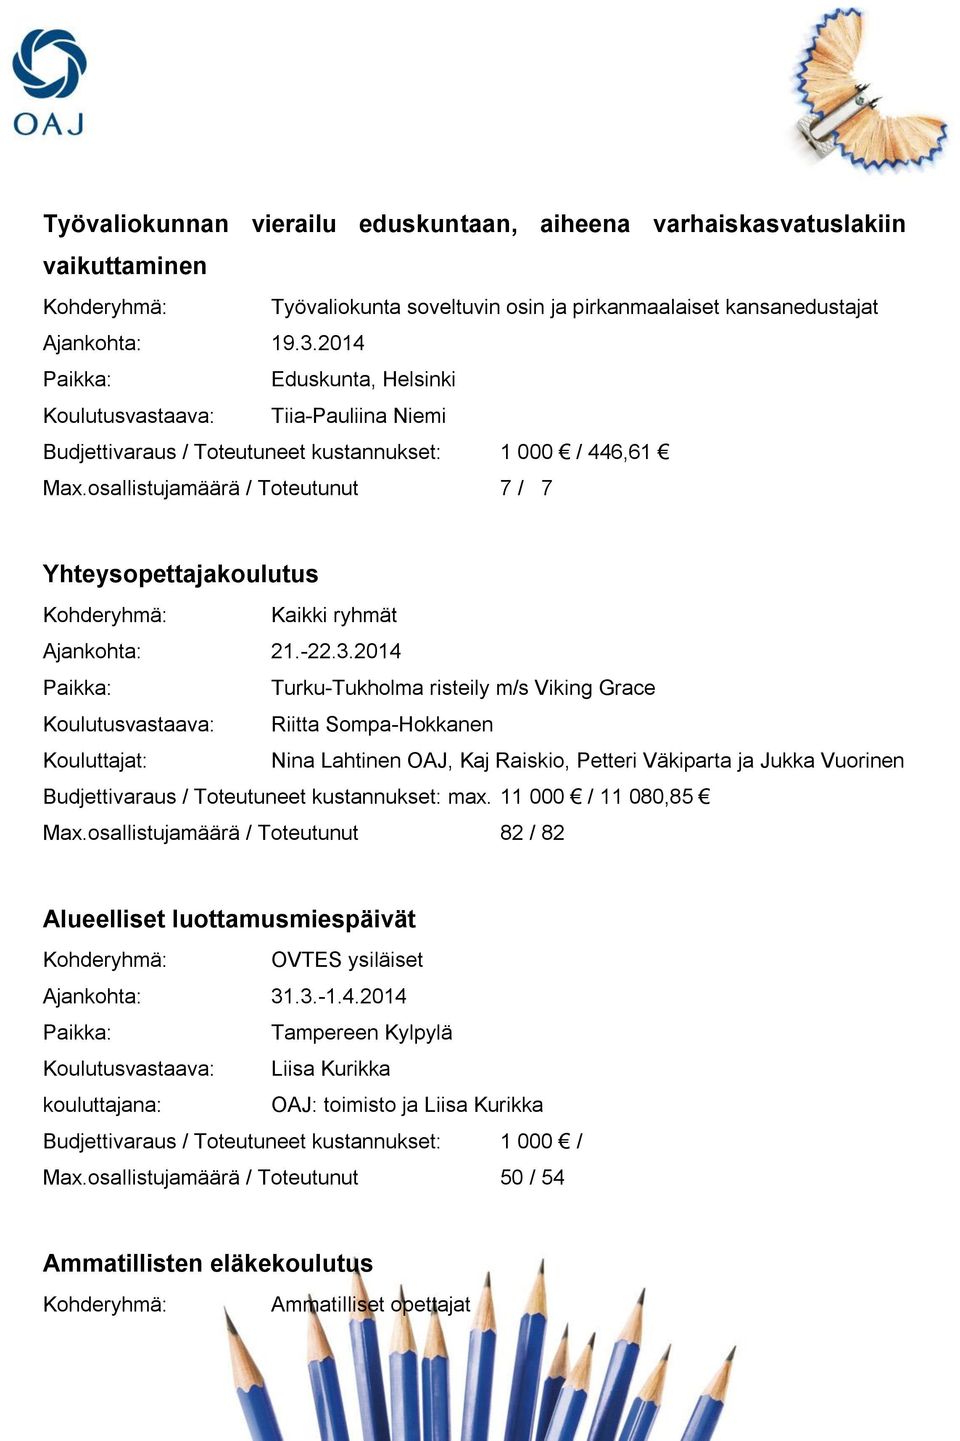 2014 Turku-Tukholma risteily m/s Viking Grace Kouluttajat: Nina Lahtinen OAJ, Kaj Raiskio, Petteri Väkiparta ja Jukka Vuorinen Budjettivaraus / Toteutuneet kustannukset: max. 11 000 / 11 080,85 Max.